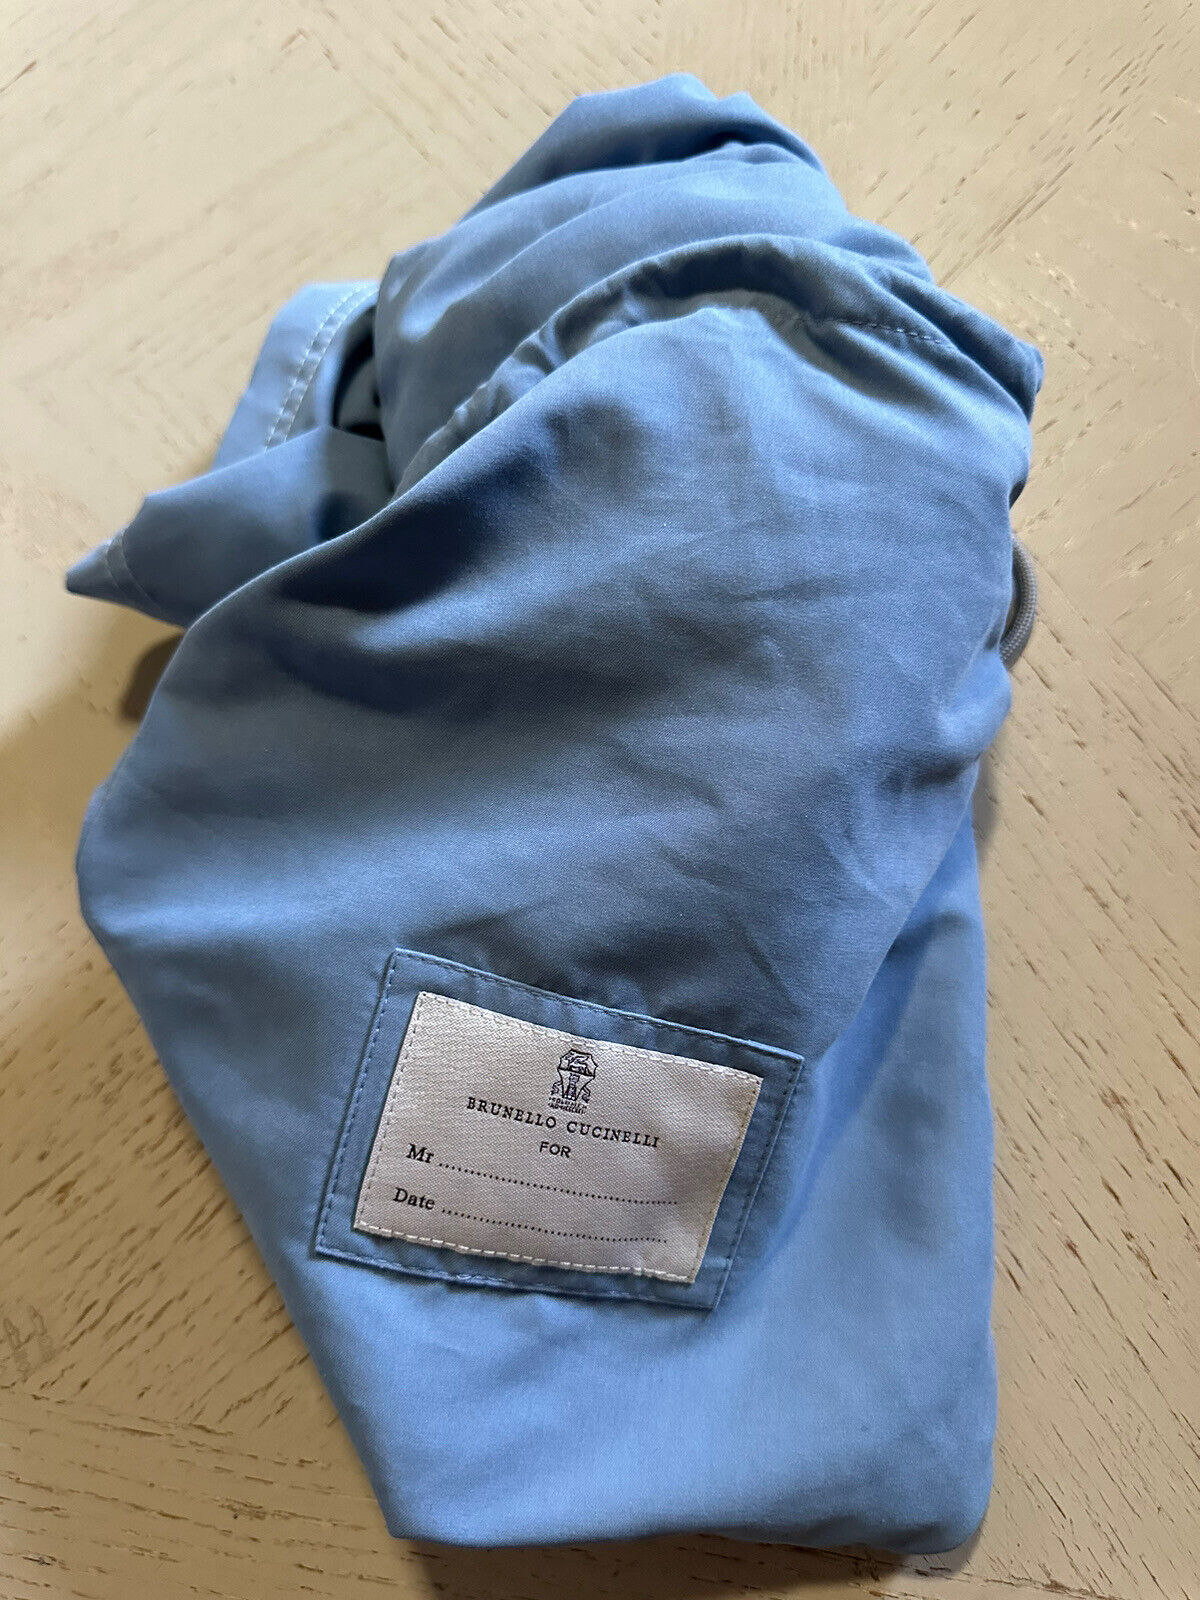 Neu mit Etikett: 550 $ Brunello Cucinelli Herren-Badeshorts mit Kordelzug, Farbe Blau, XL